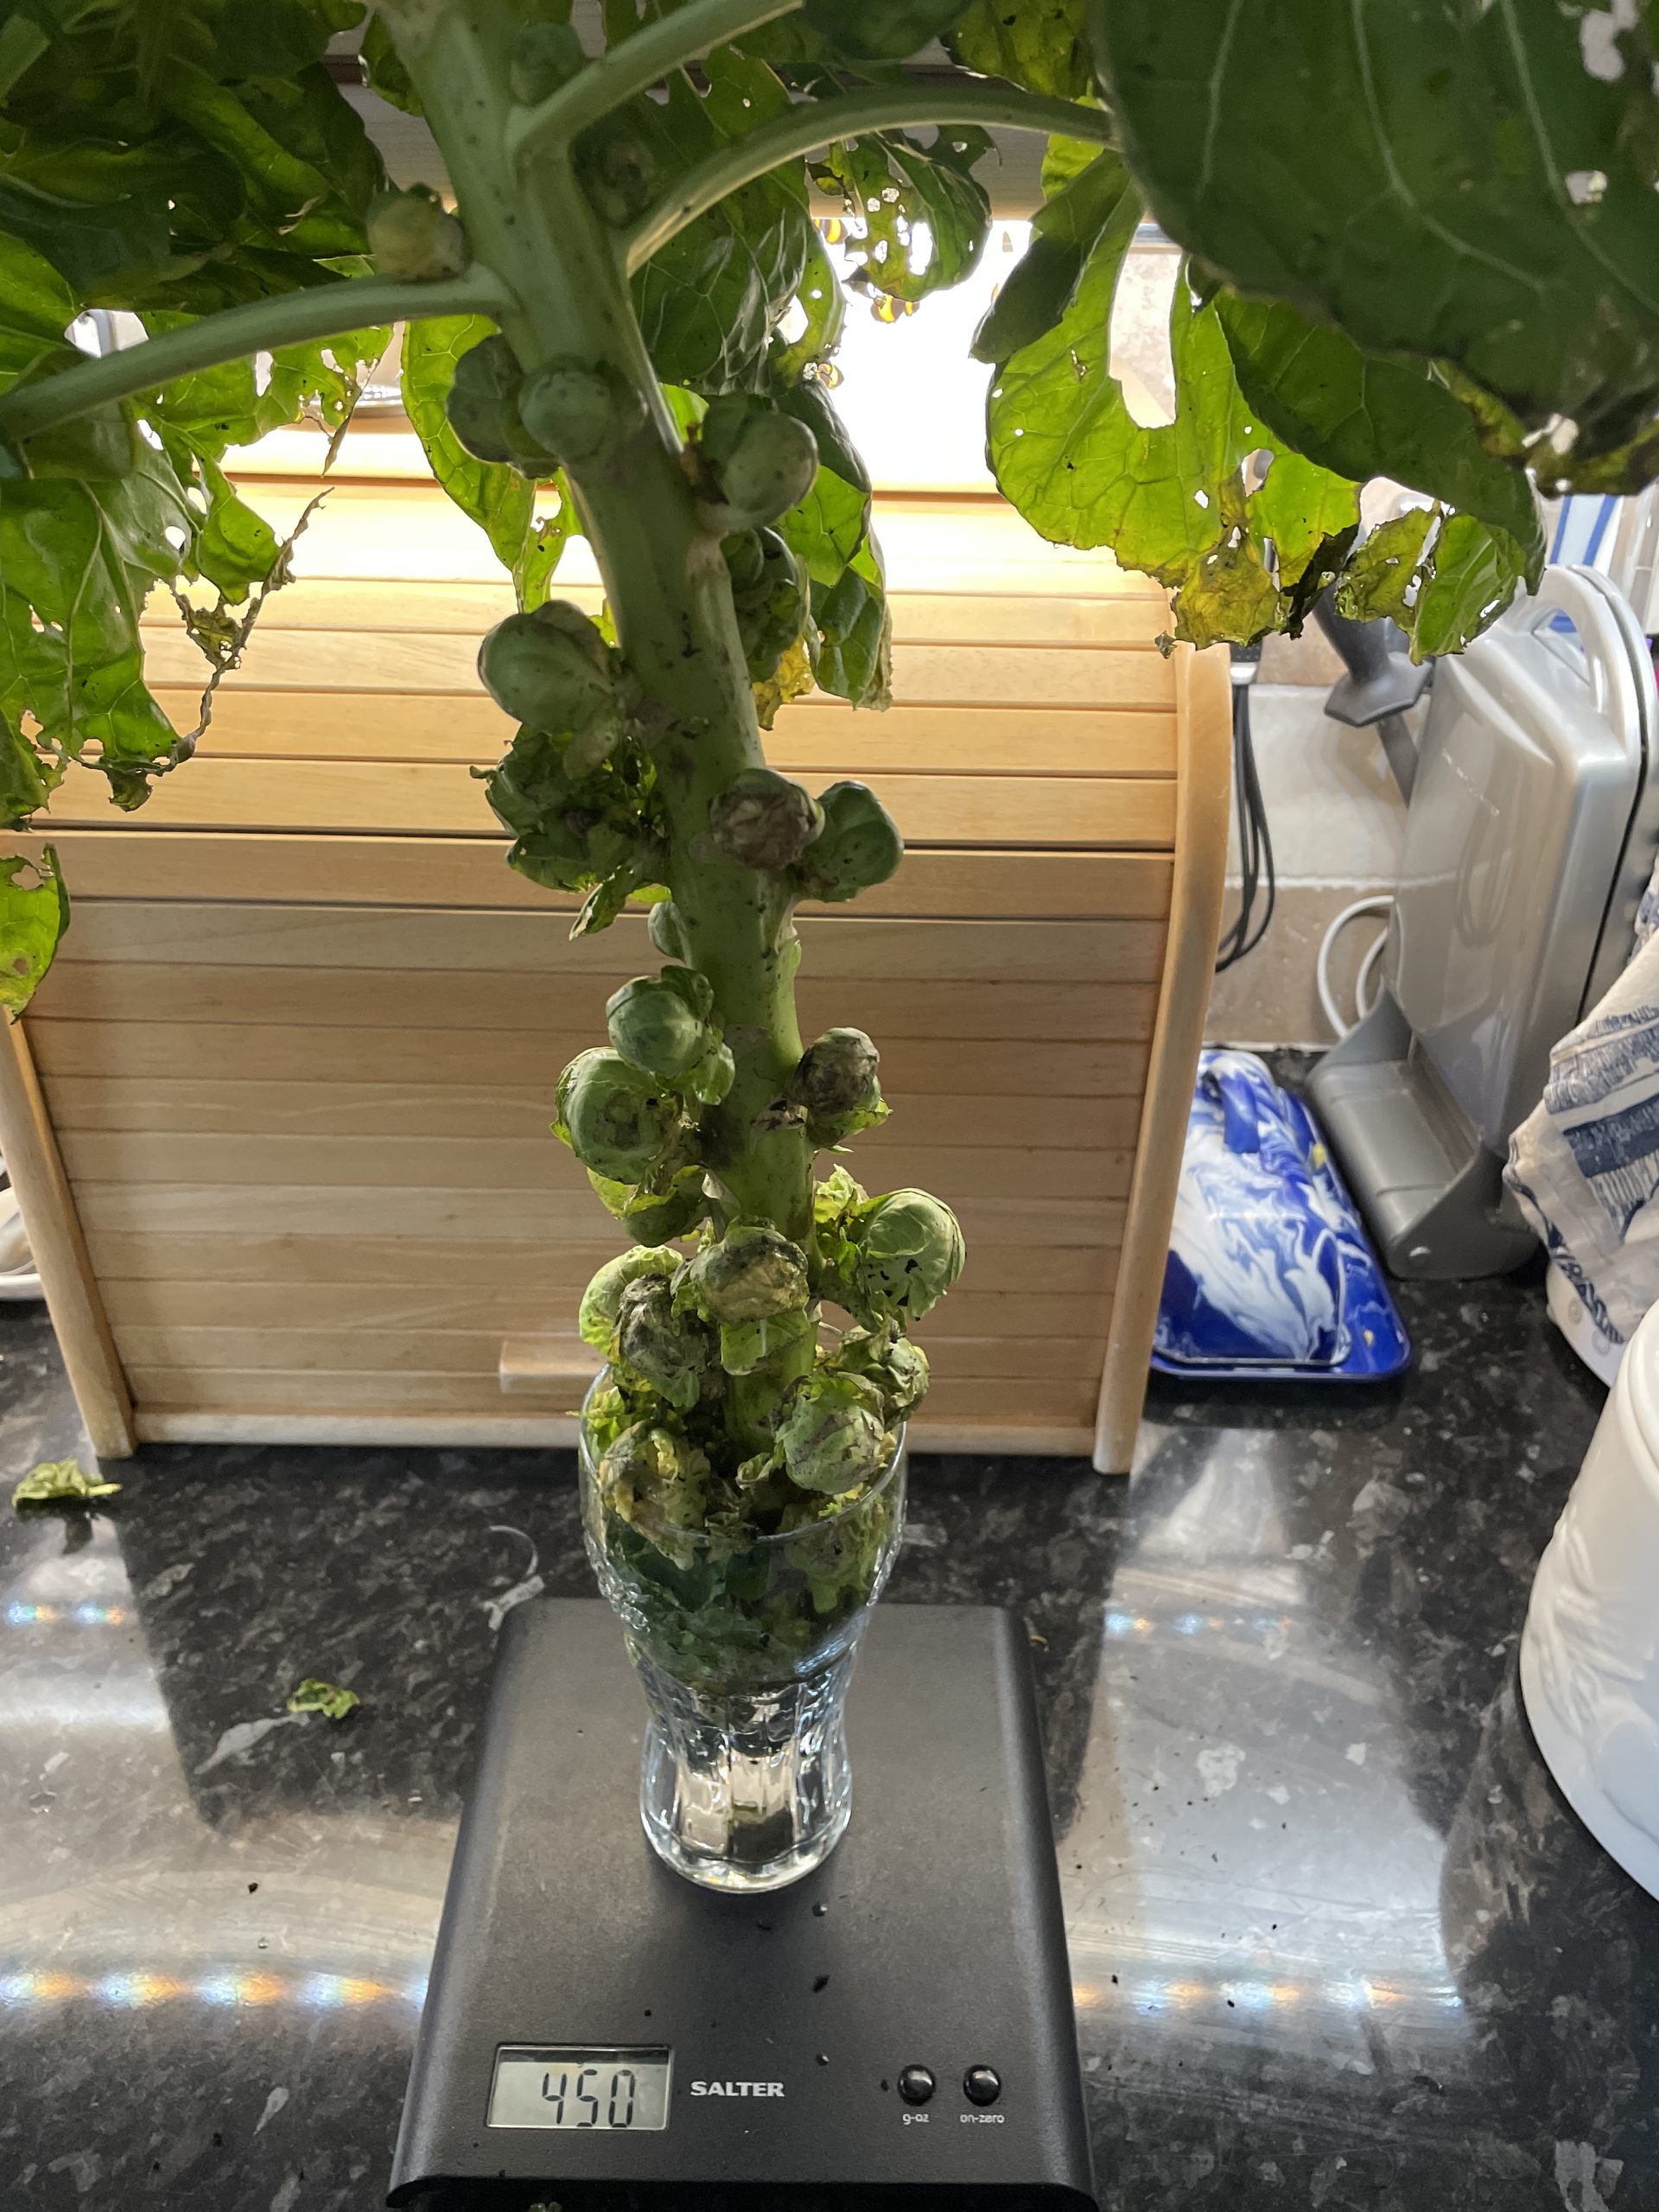 Brussel sprout stem harvested (6/2/22)